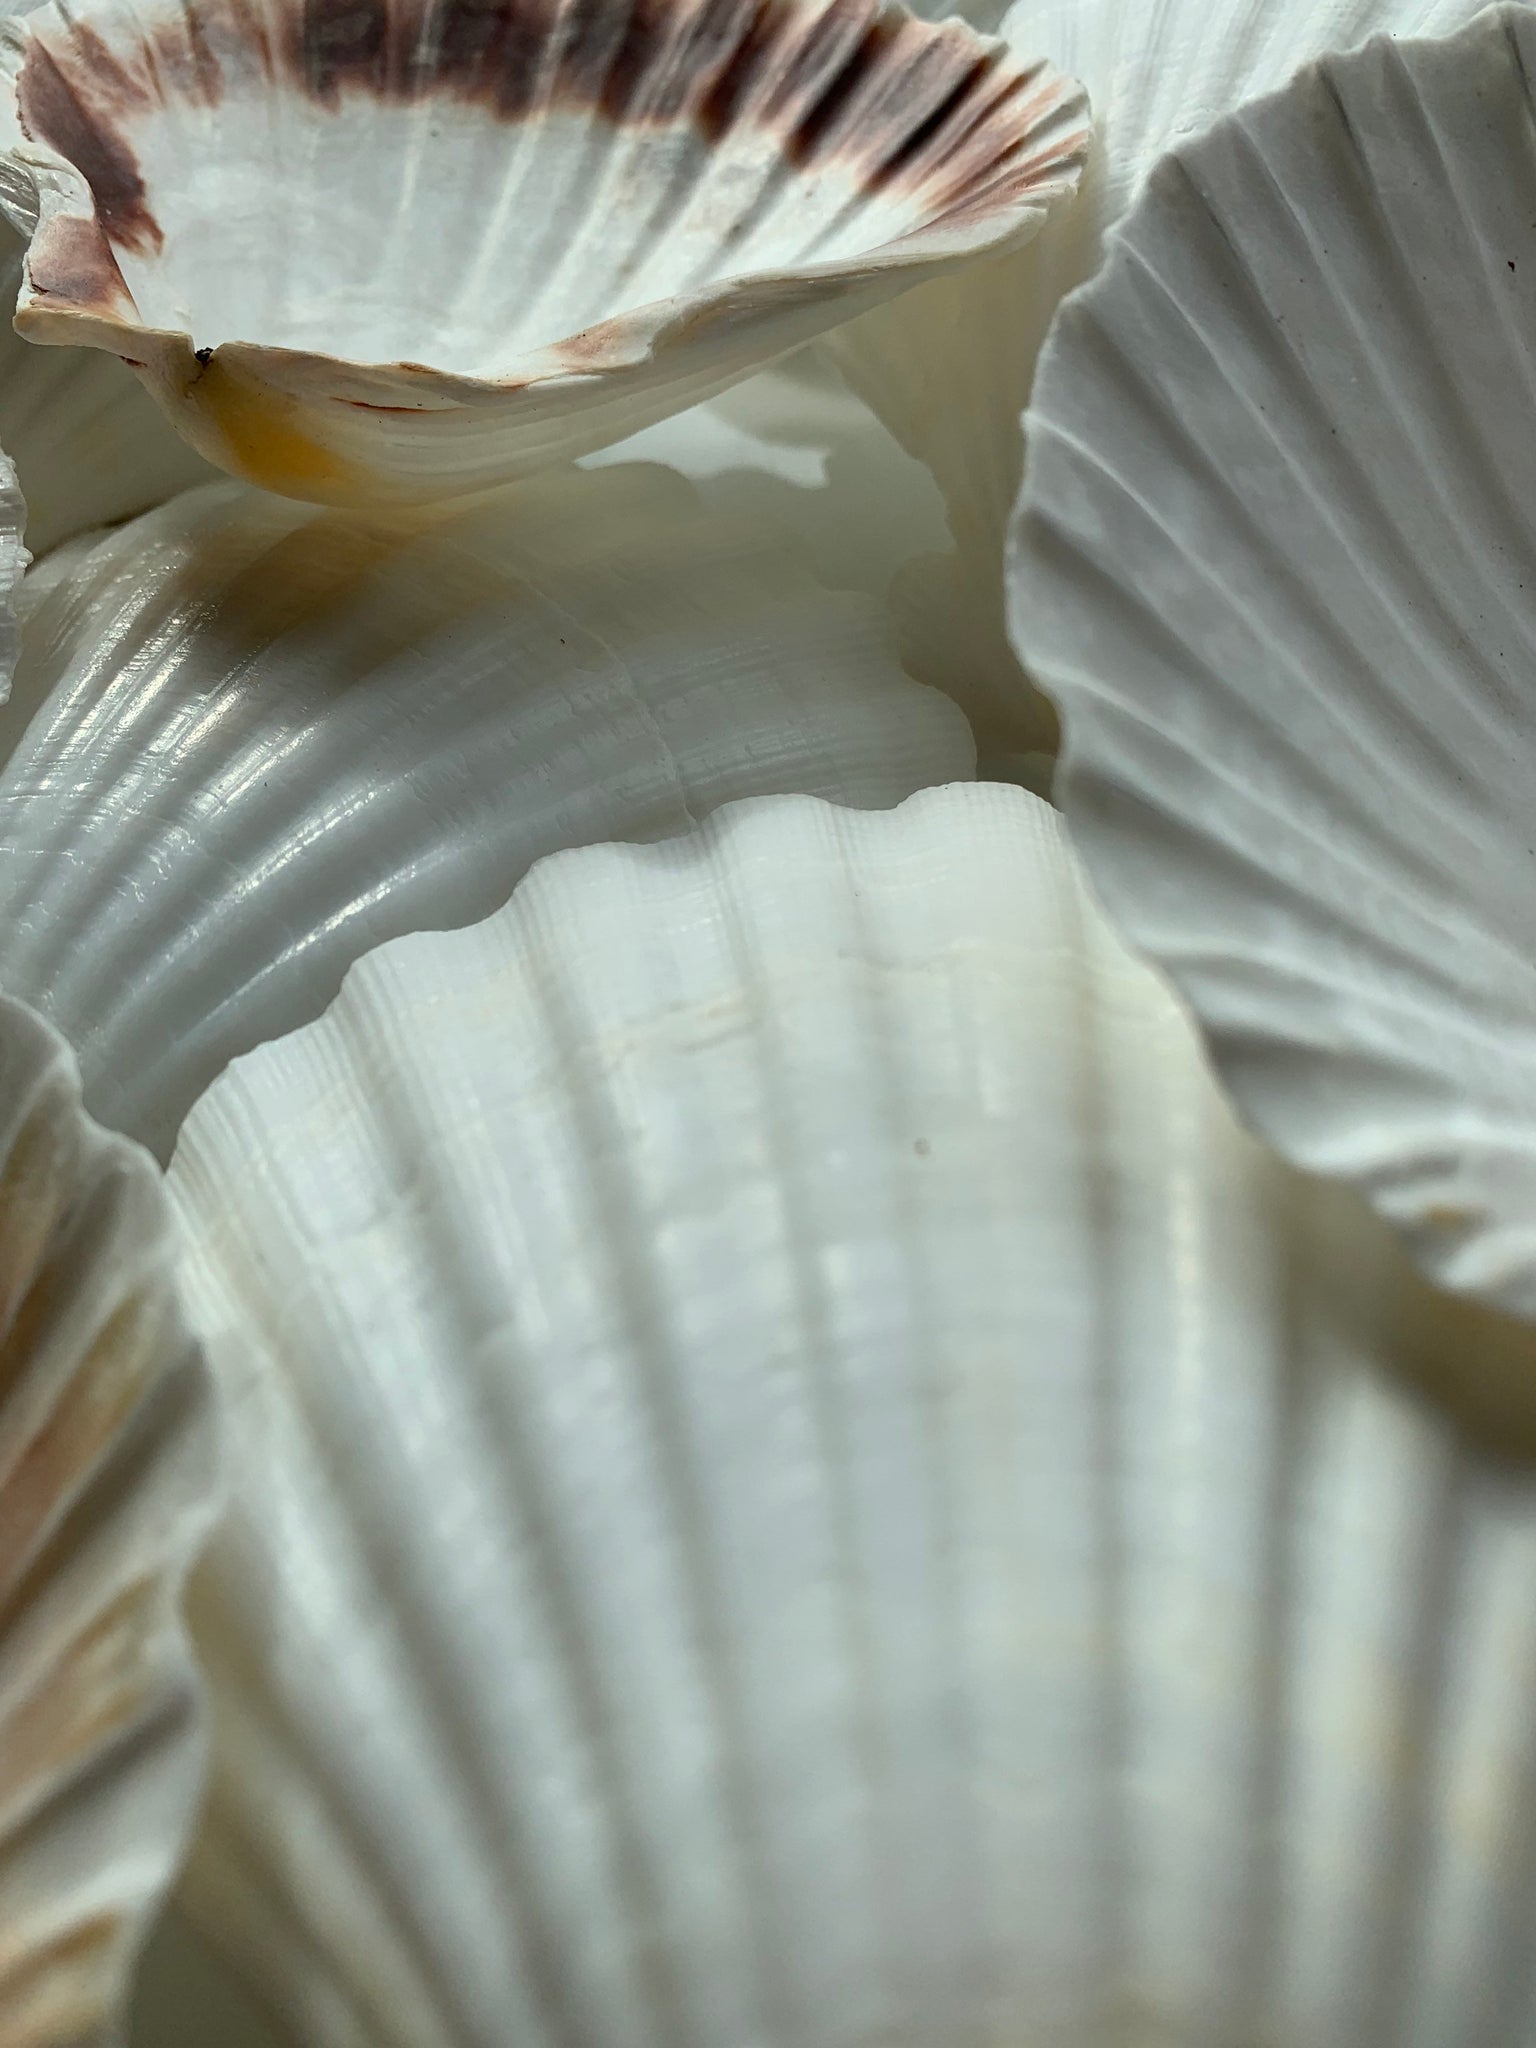 Irish Flat Pectin Seashells - Irish Scallop Shell - Craft Shells